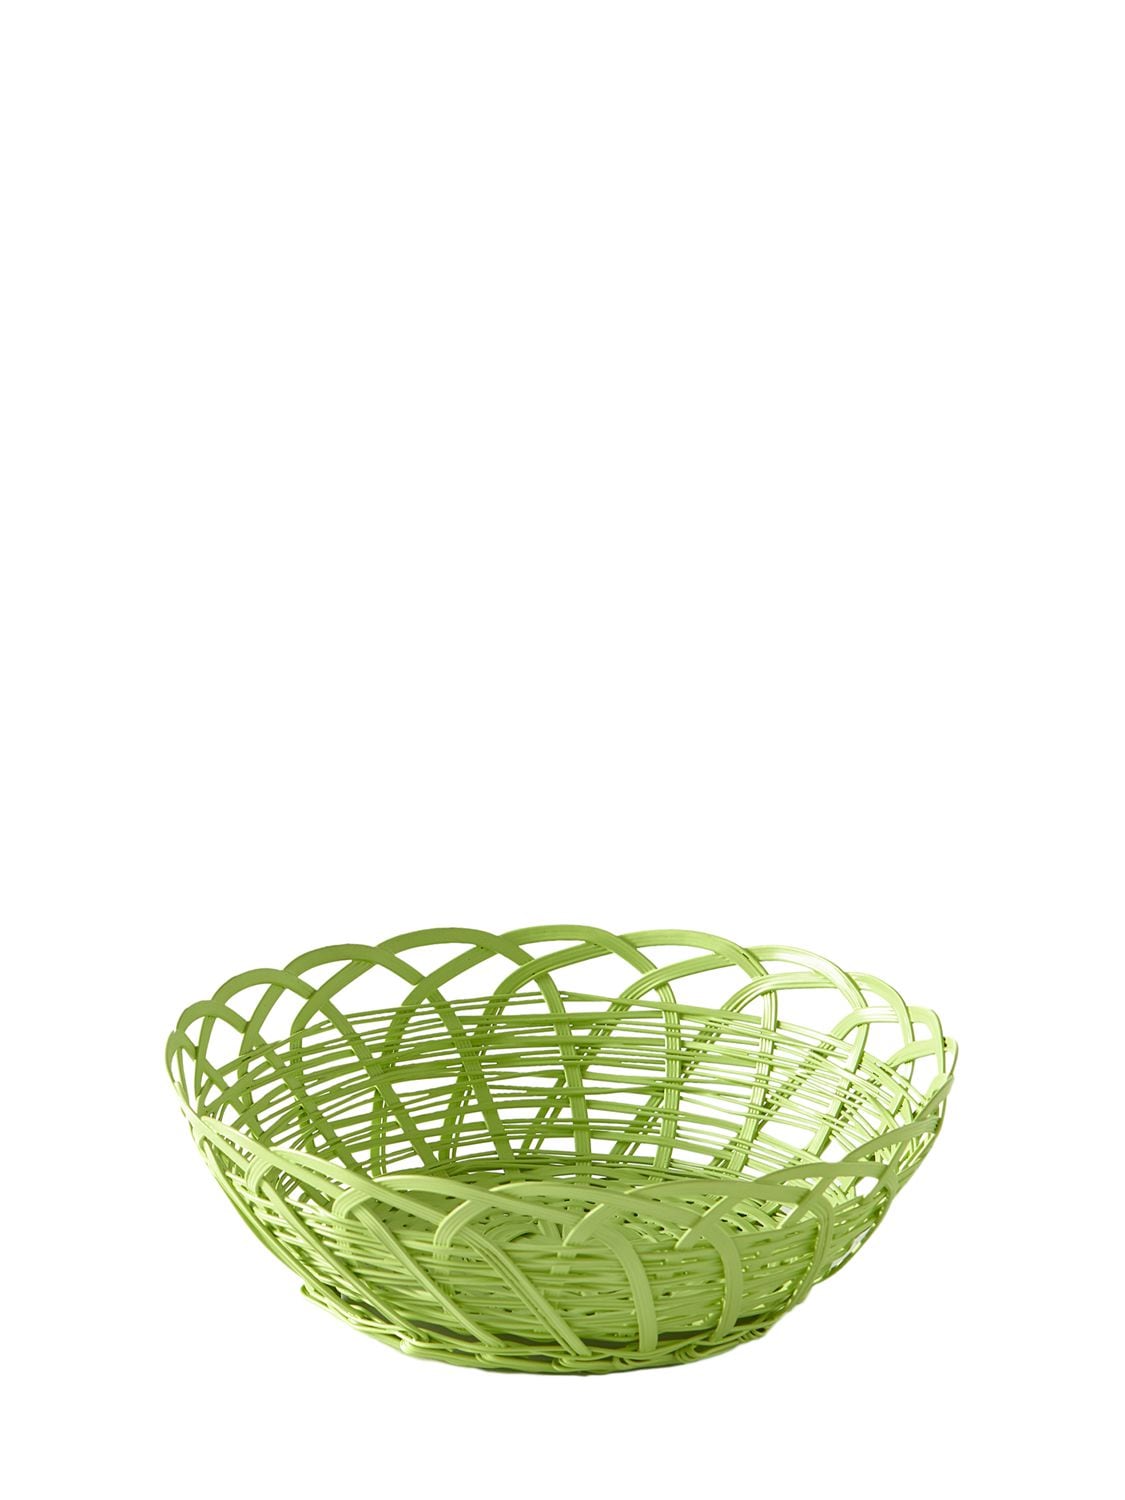 Image of Bakkie Iron Lace Basket